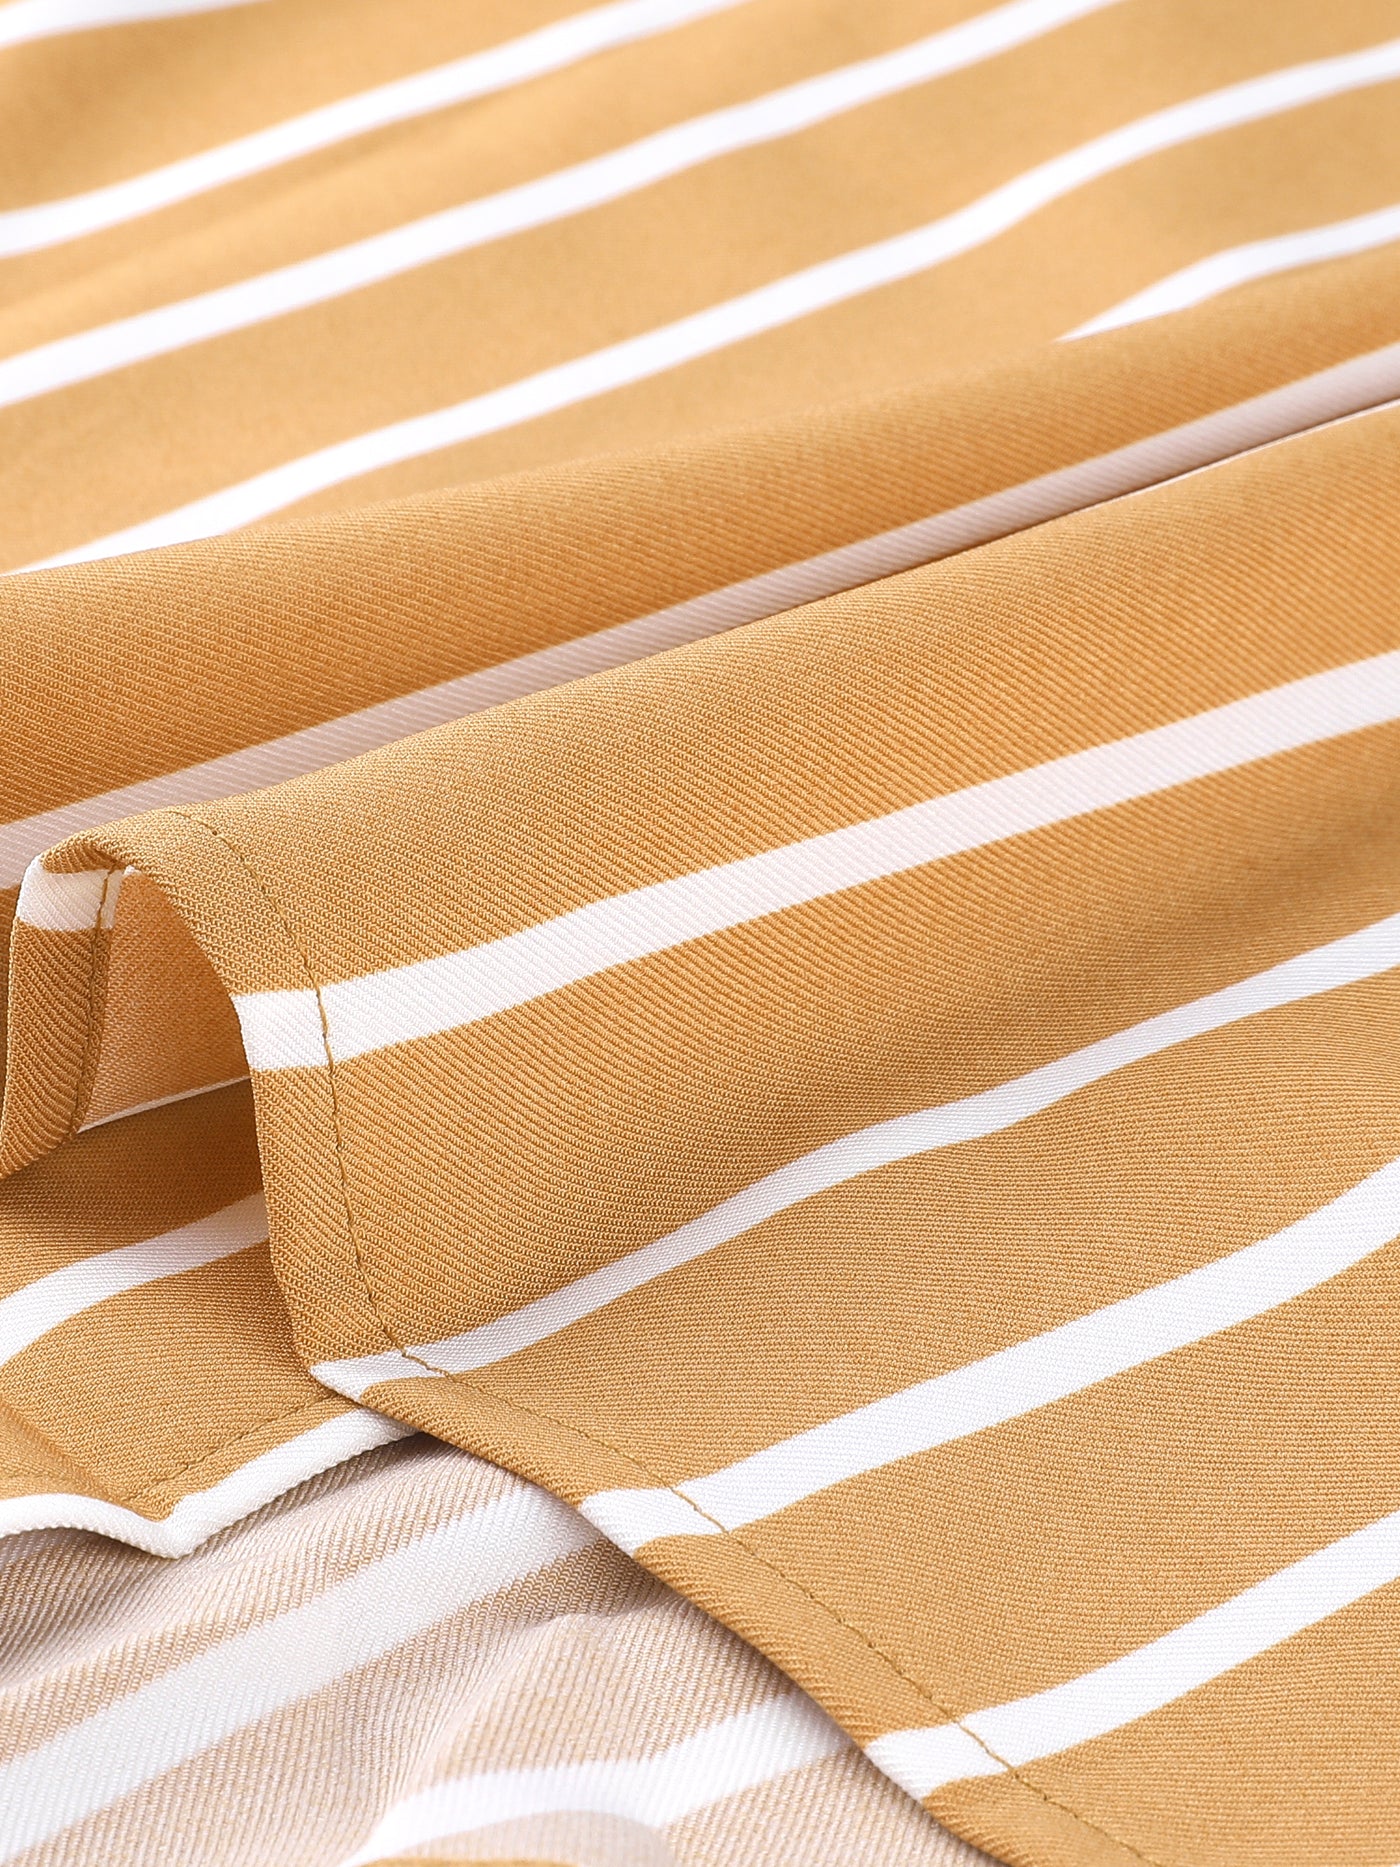 Allegra K Striped Button Up Lapel Collar Top Short Sleeve Tie Front Crop Shirt